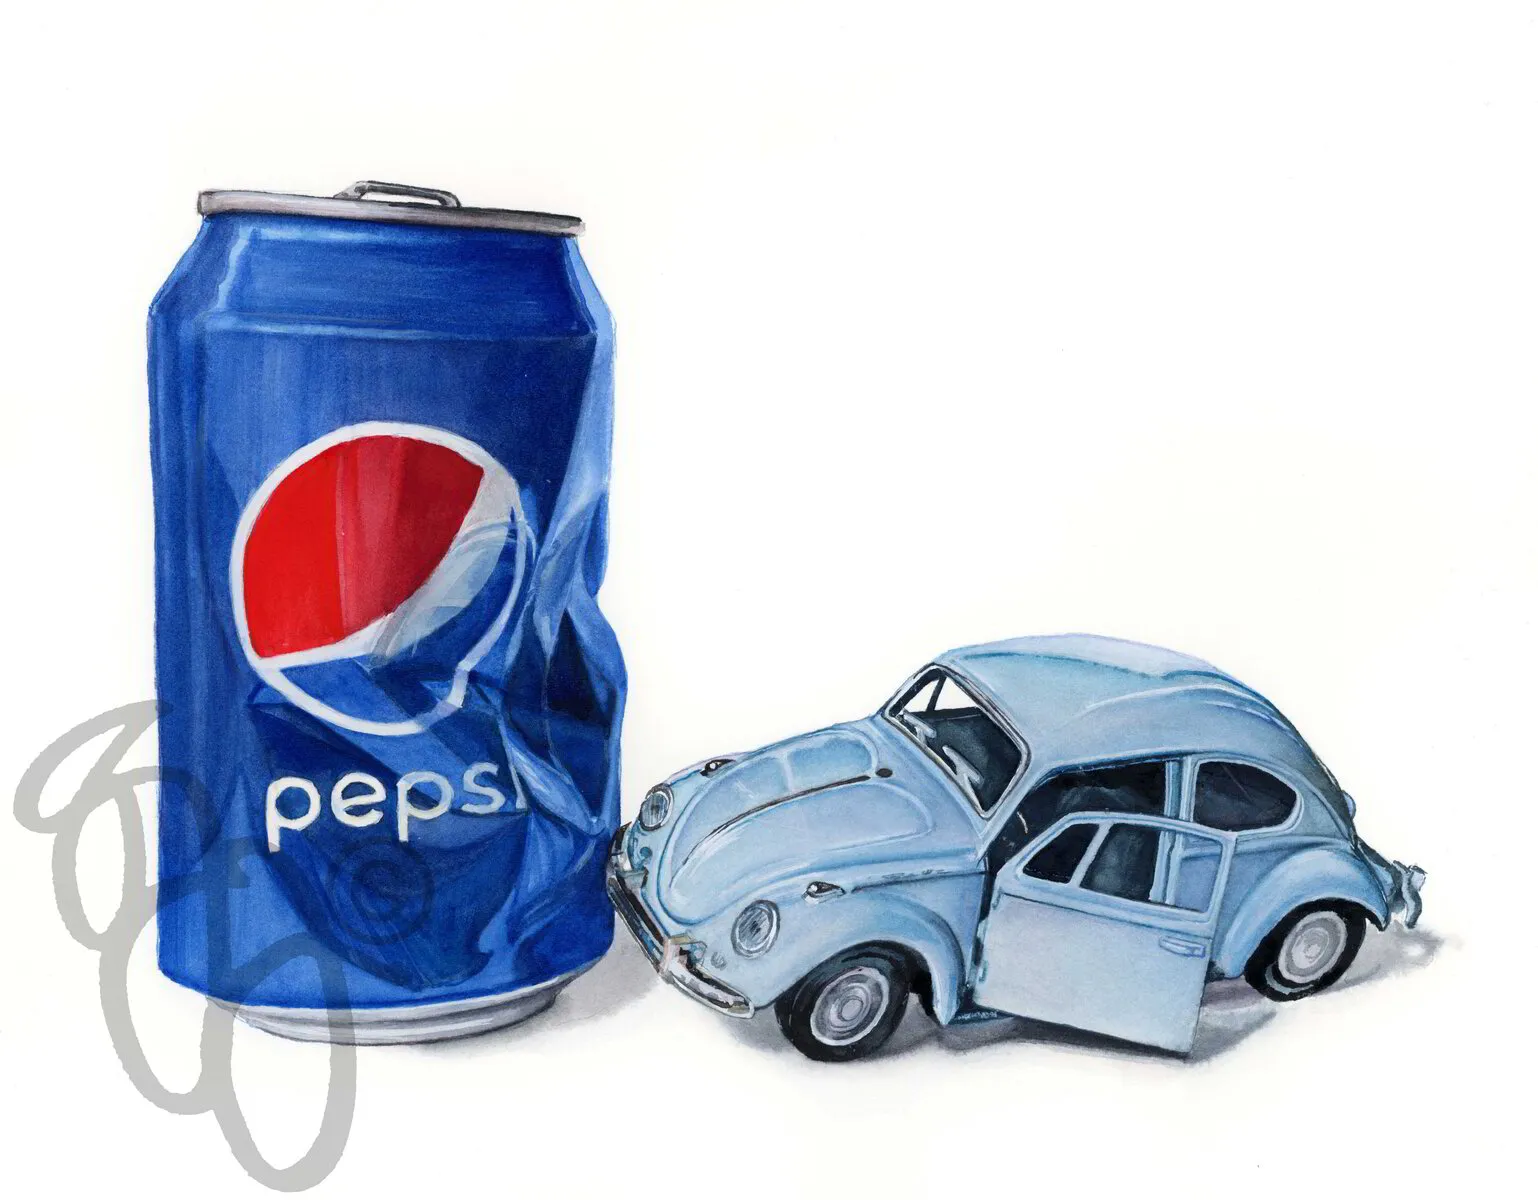 Is Pepsi OK - Print